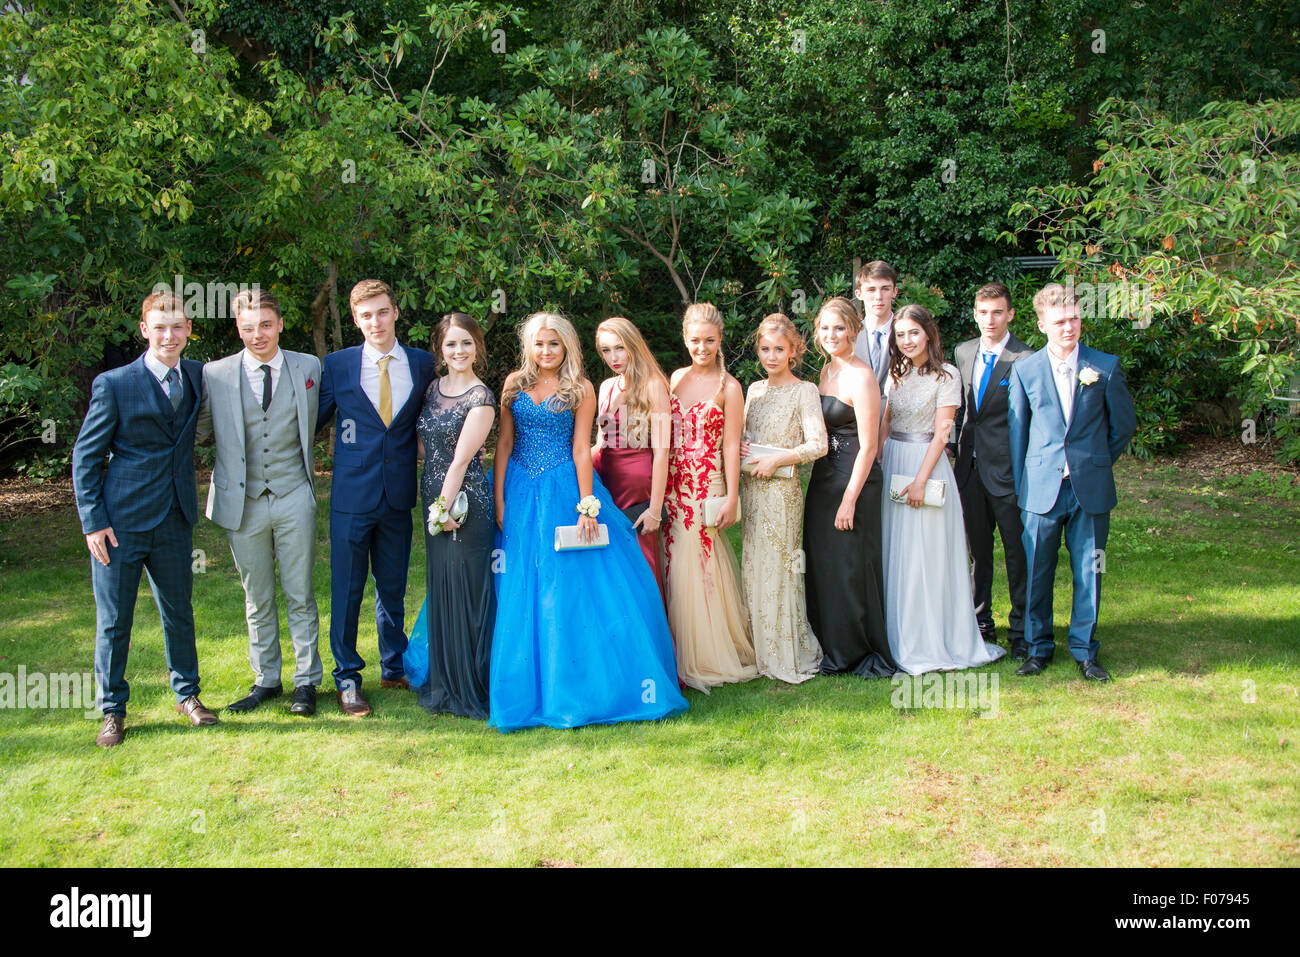 Groupe d'adolescents et jeunes filles posant en robe de bal, Englefield Green, Surrey, Angleterre, Royaume-Uni Banque D'Images